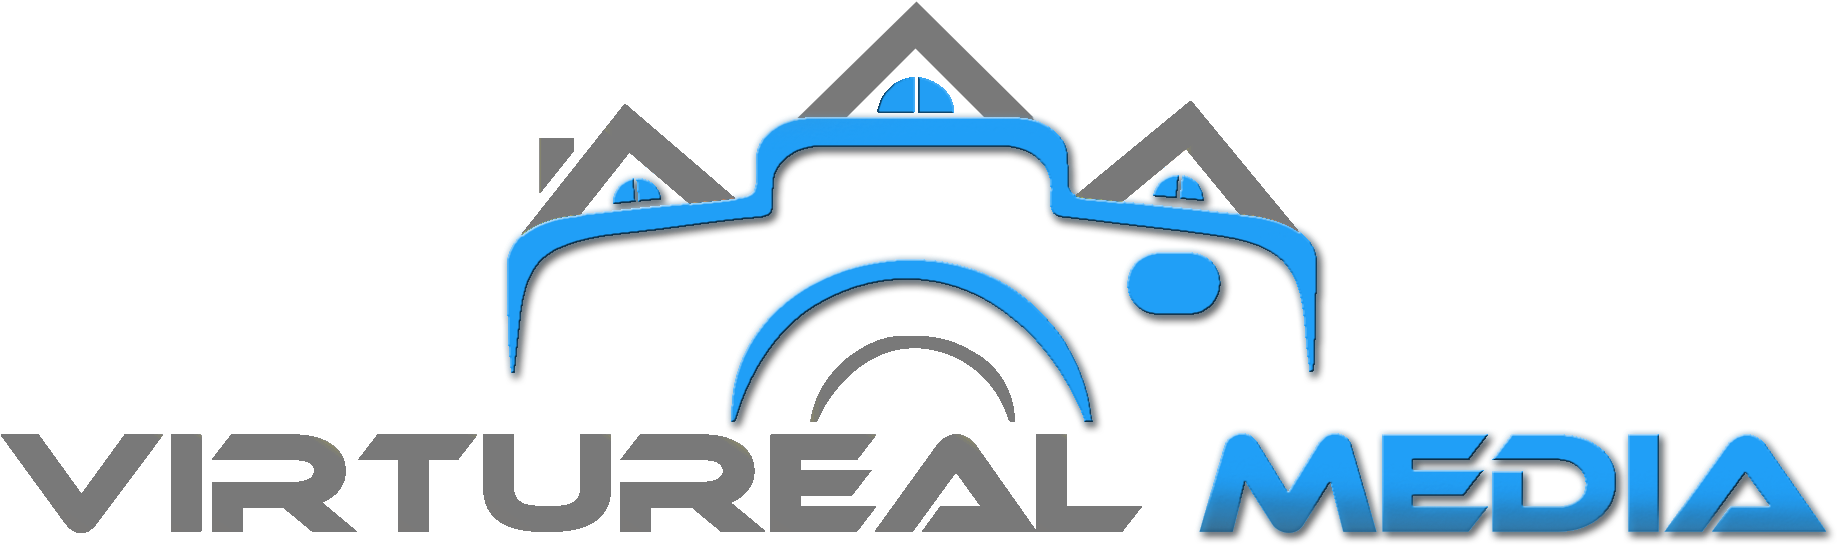 Virtureal Media Central Coast Real Estate Photography - Real Estate Photographer Logo (1861x593)